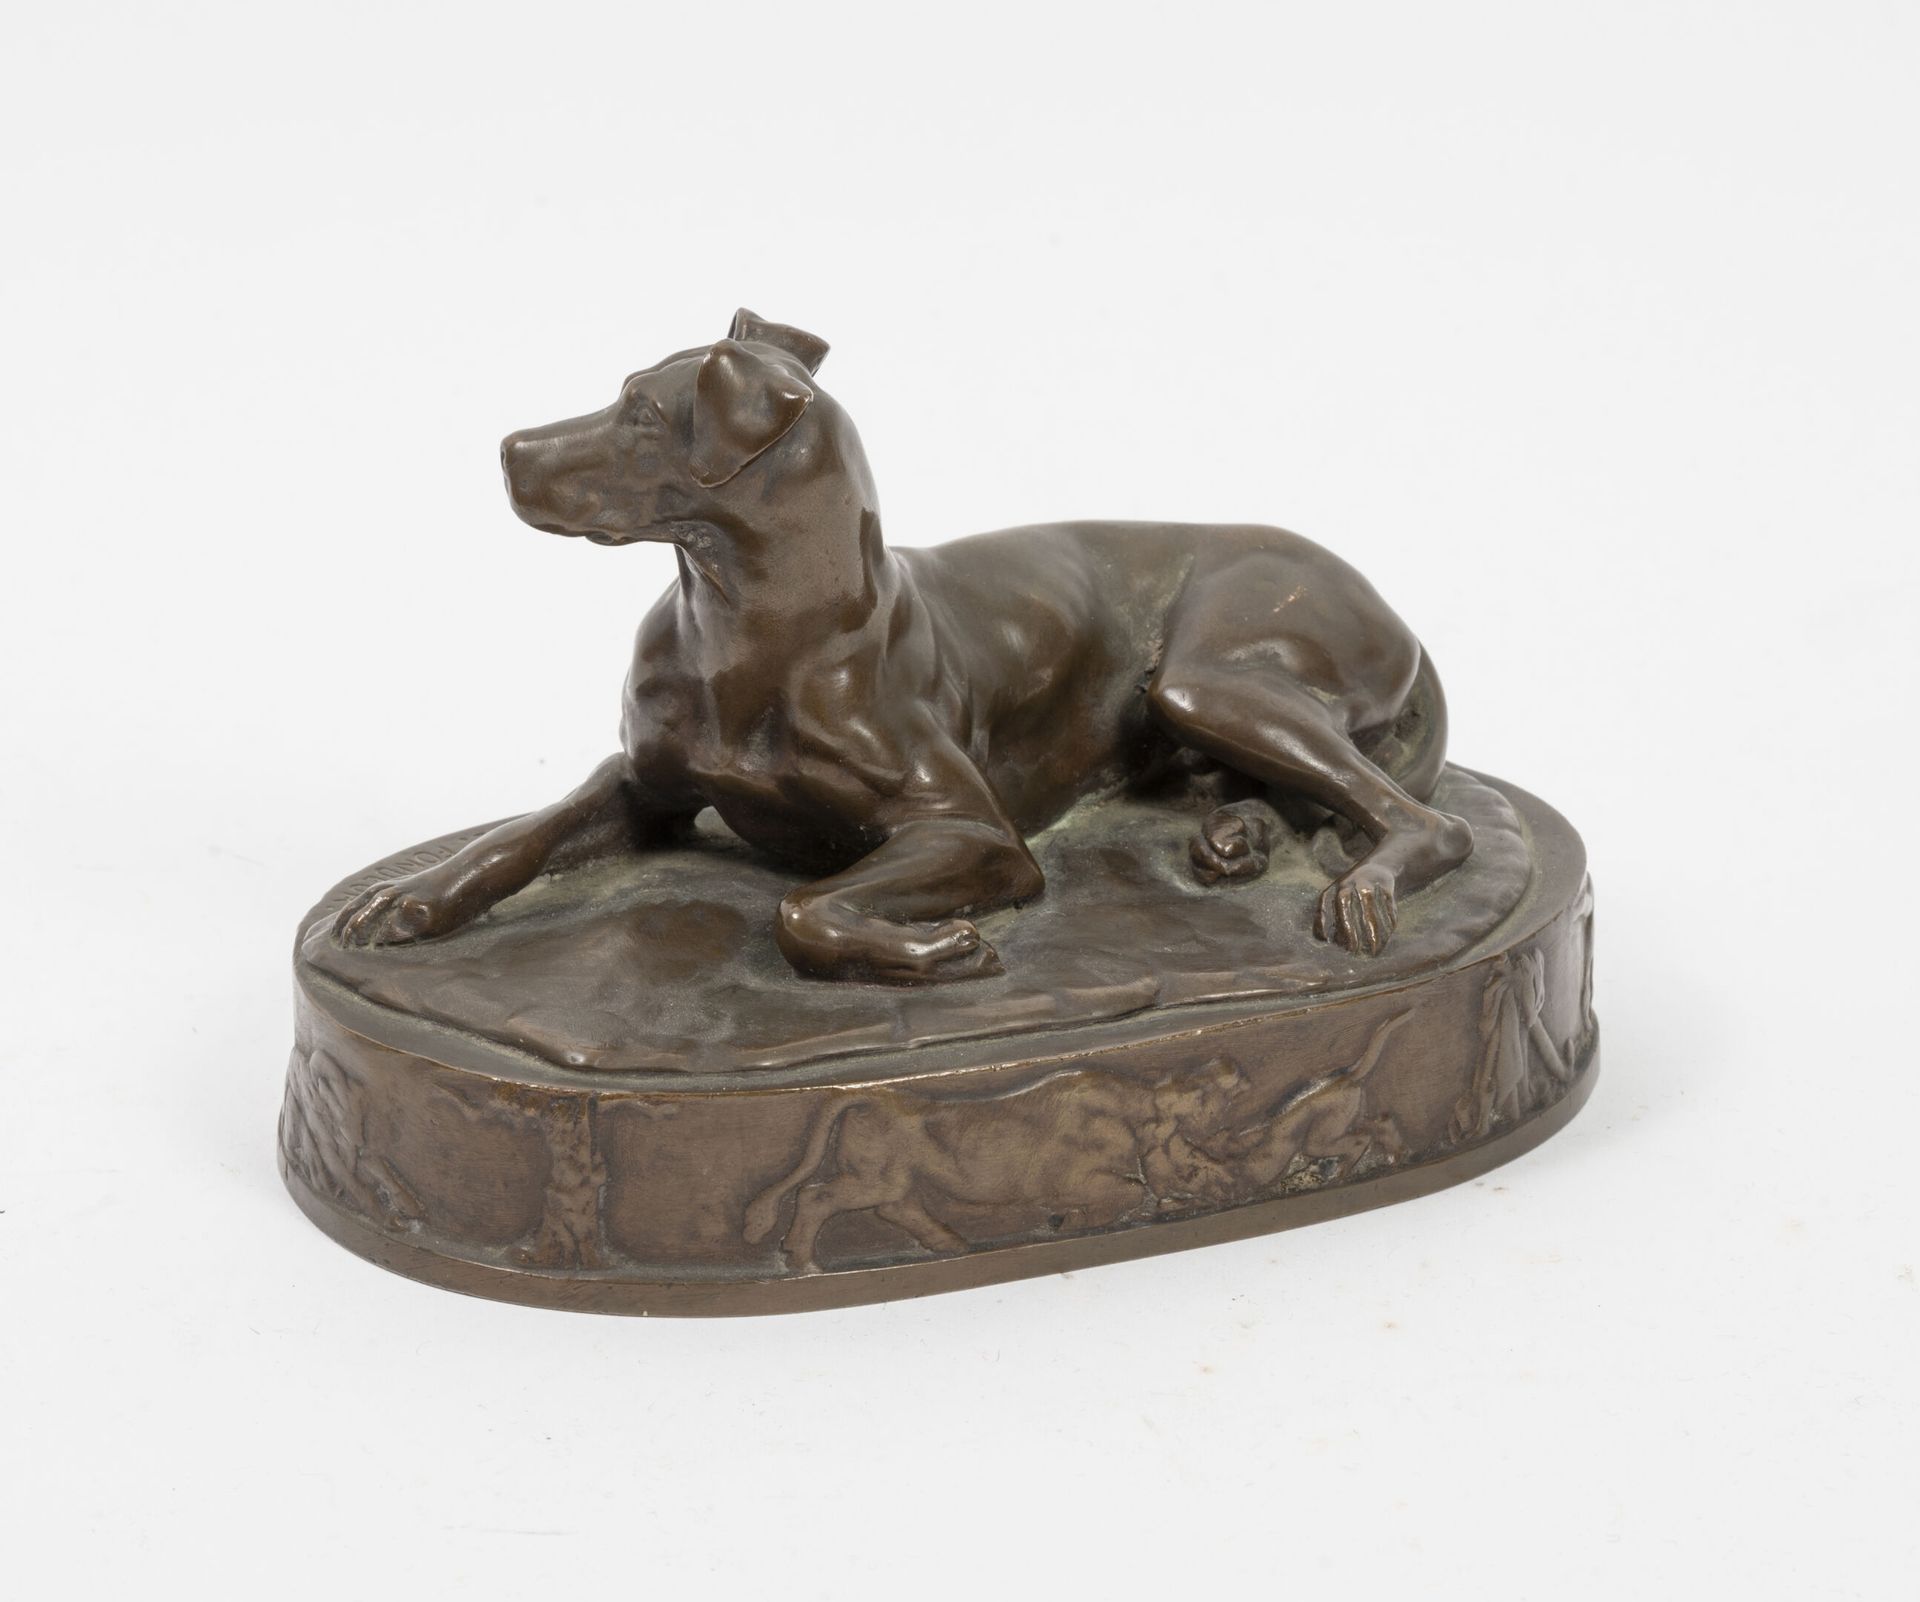 Ferdinand Barbedienne fondeur 躺着的狗。

铜质证明，带有棕色铜锈。

椭圆形底座，有狩猎场景的浮雕装饰。

阳台上的创始人标记。&hellip;